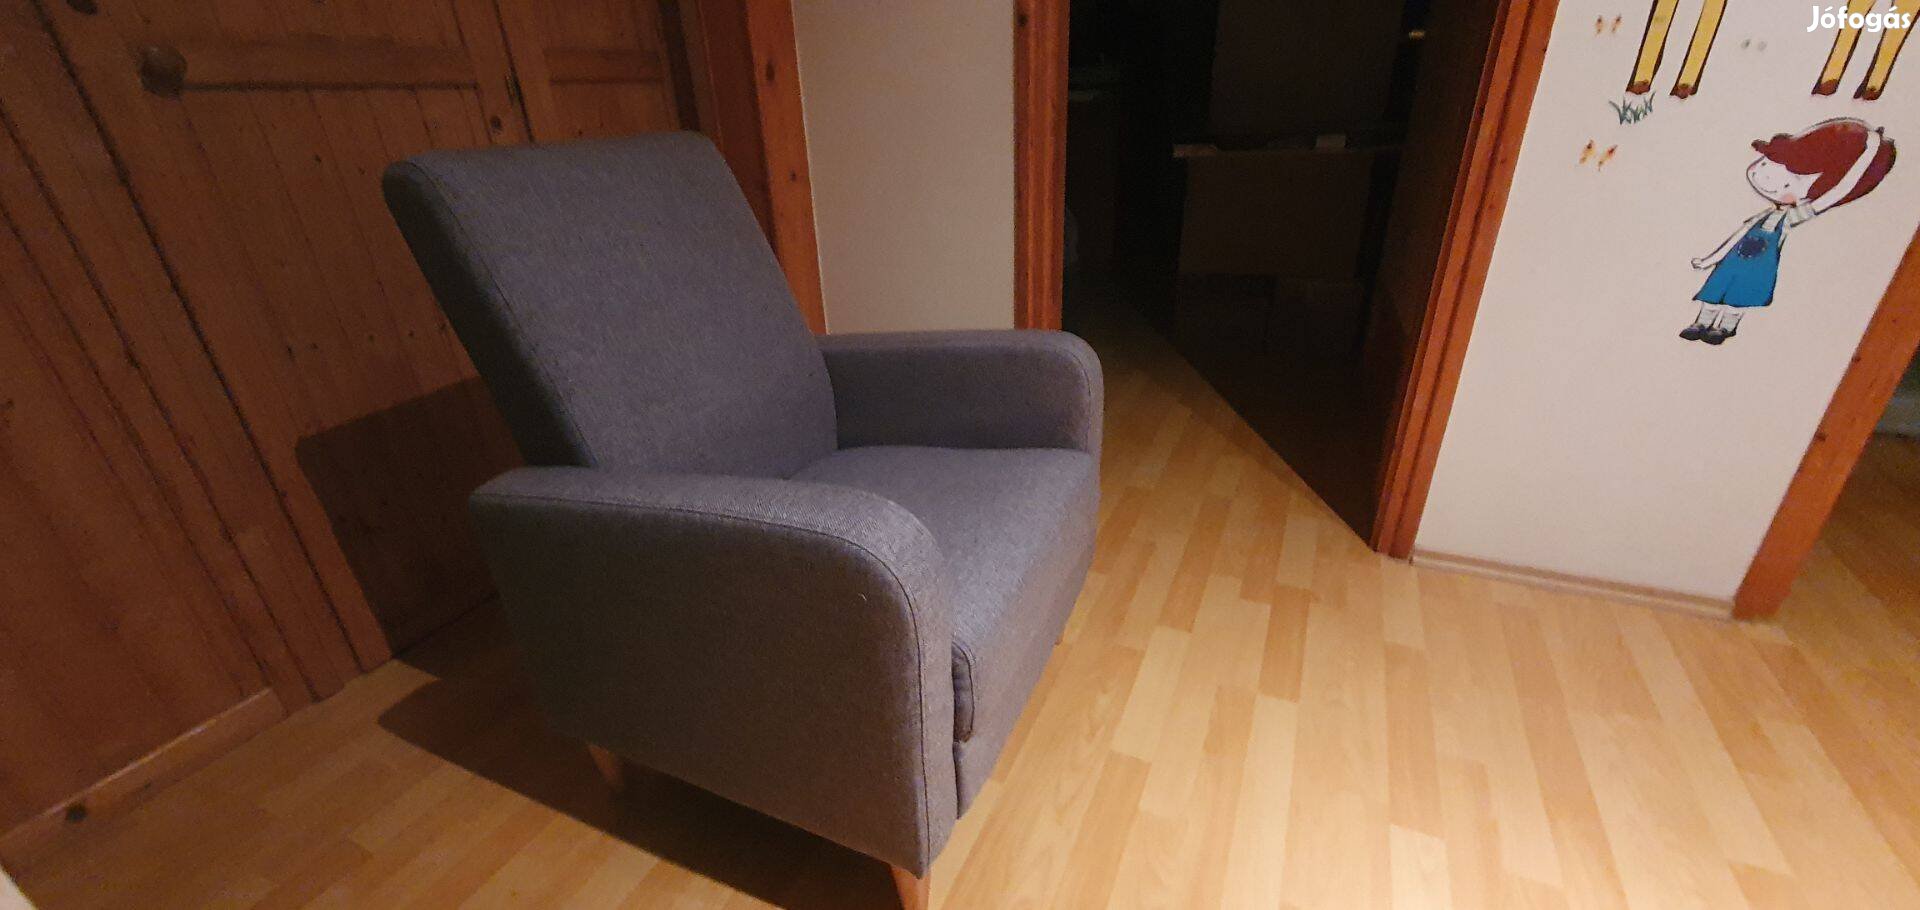 Új, bontatlan fotel 3 db eladó. Egyben vagy külön is. Szürke színben